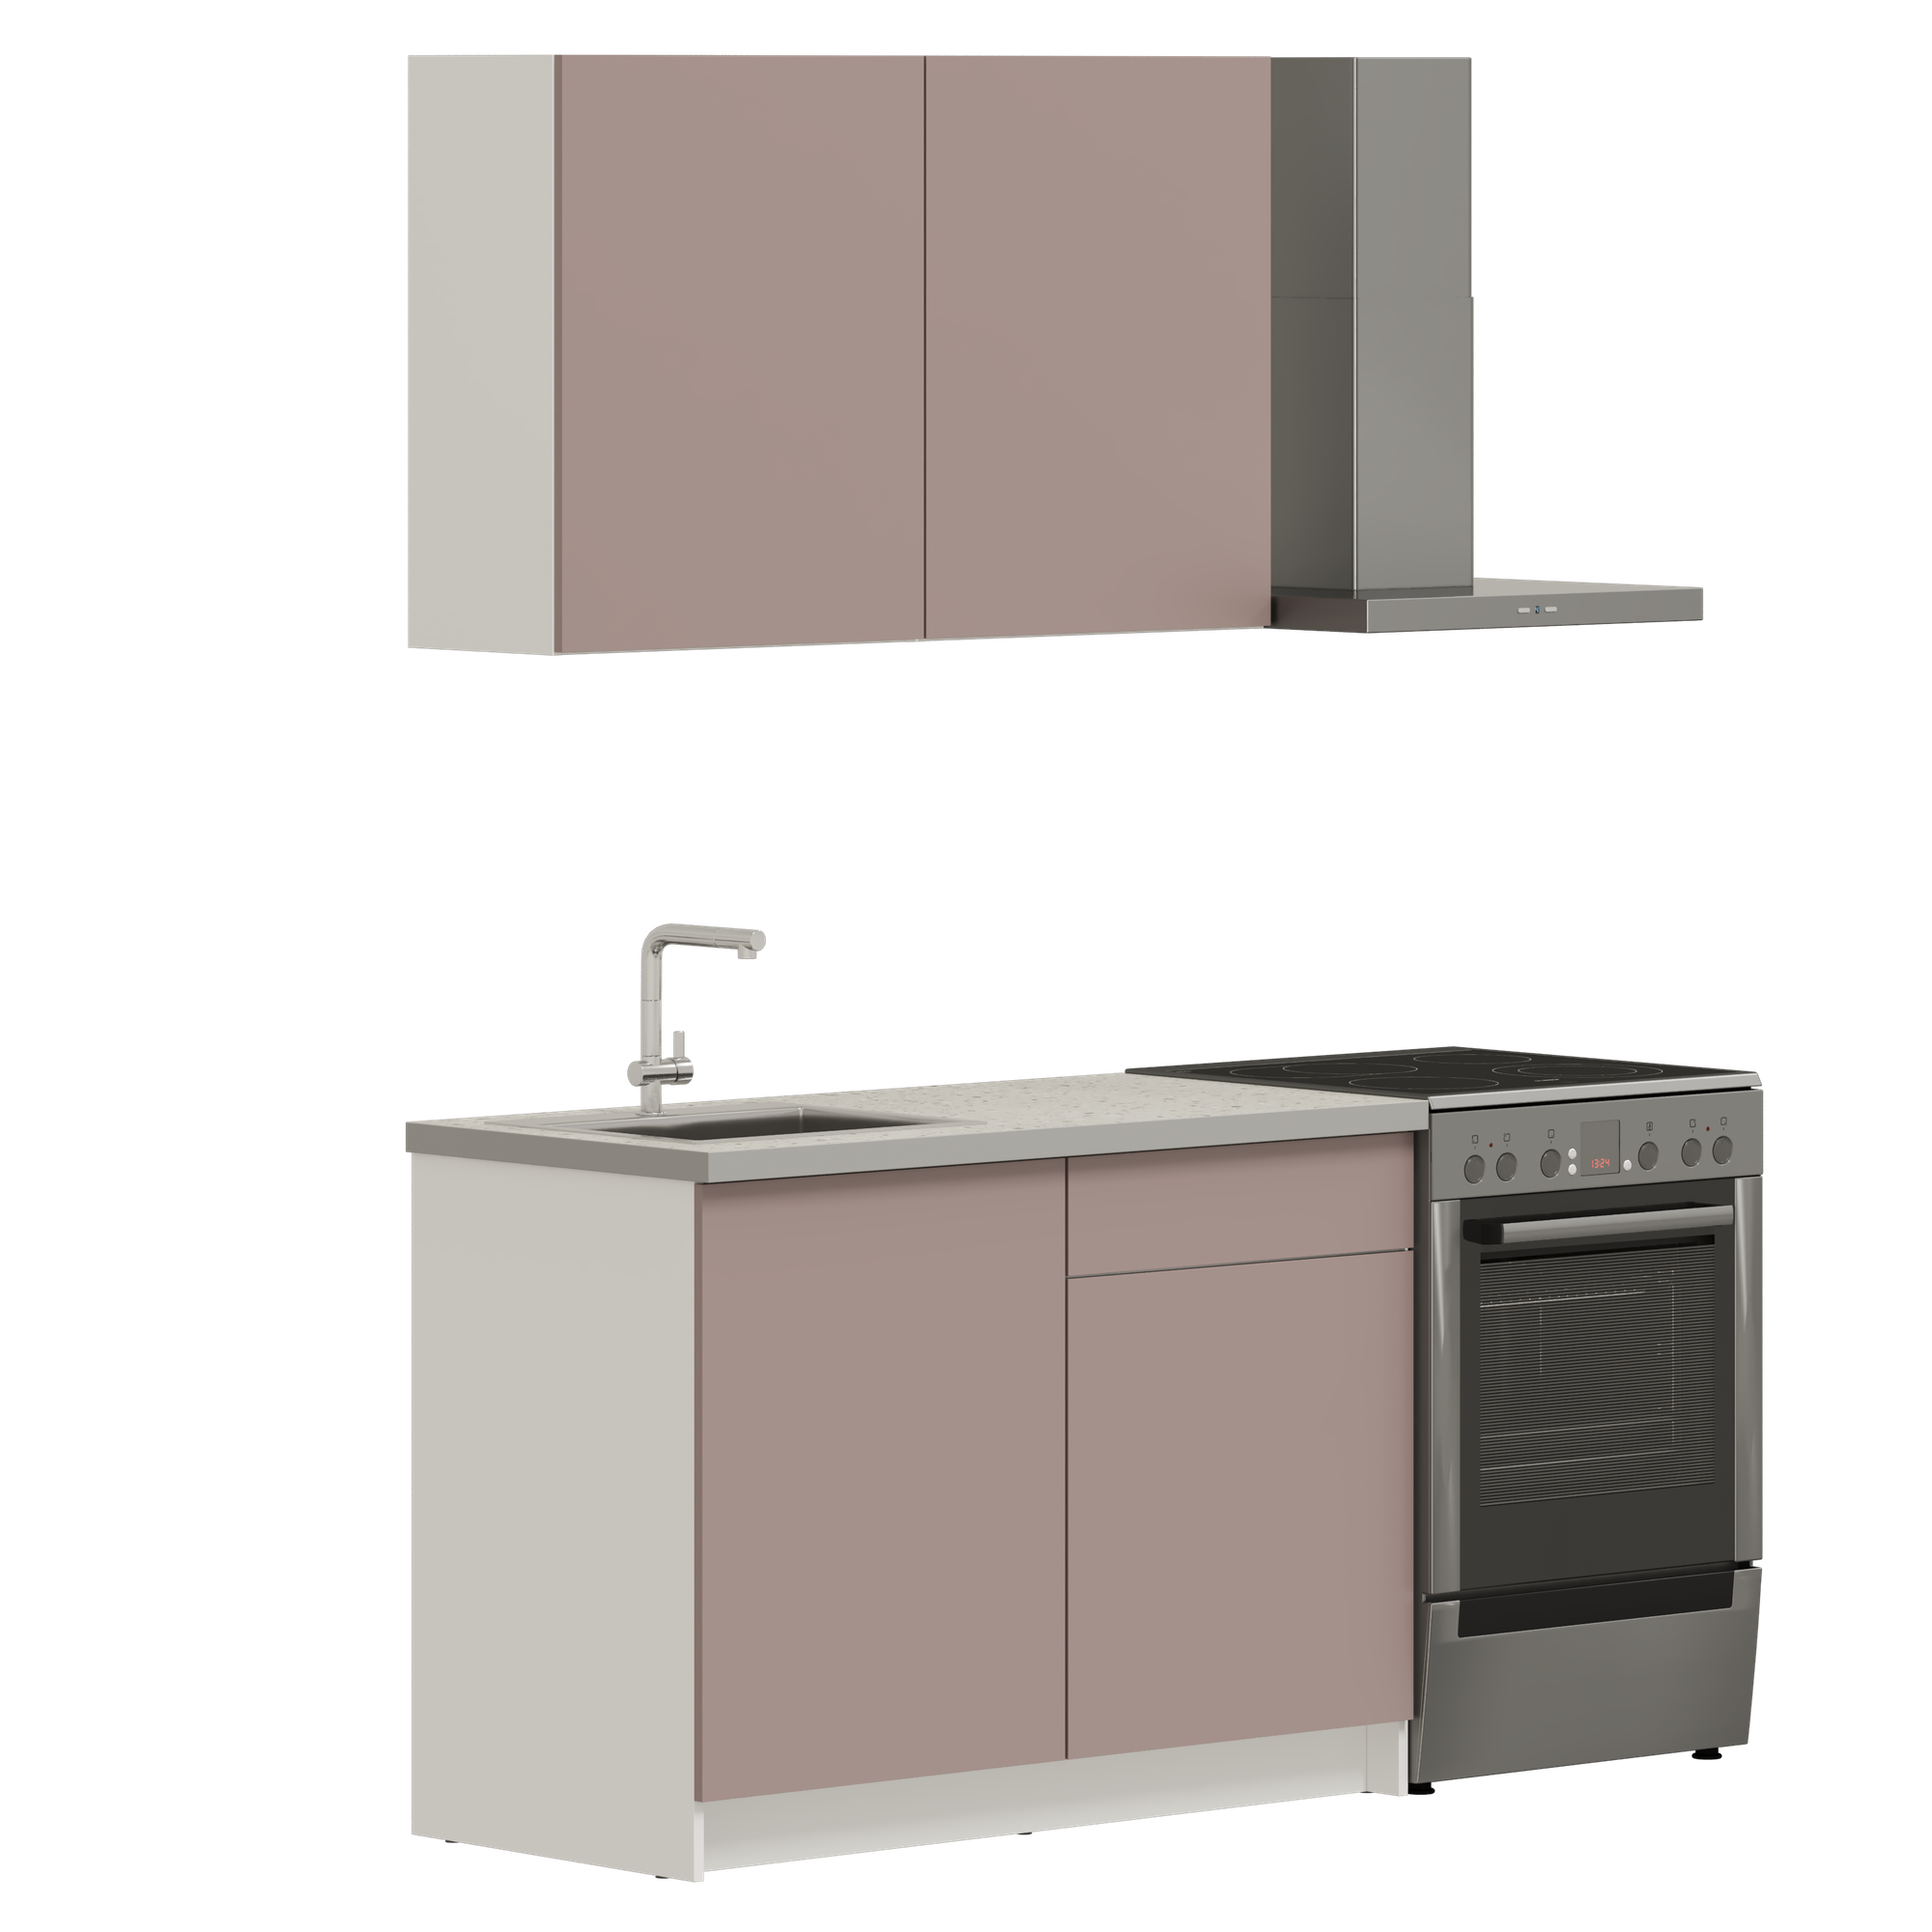 Кухонный гарнитур, кухня прямая Pragma Elinda 121 см (1,21 м), со столешницей, ЛДСП, пыльный розовый